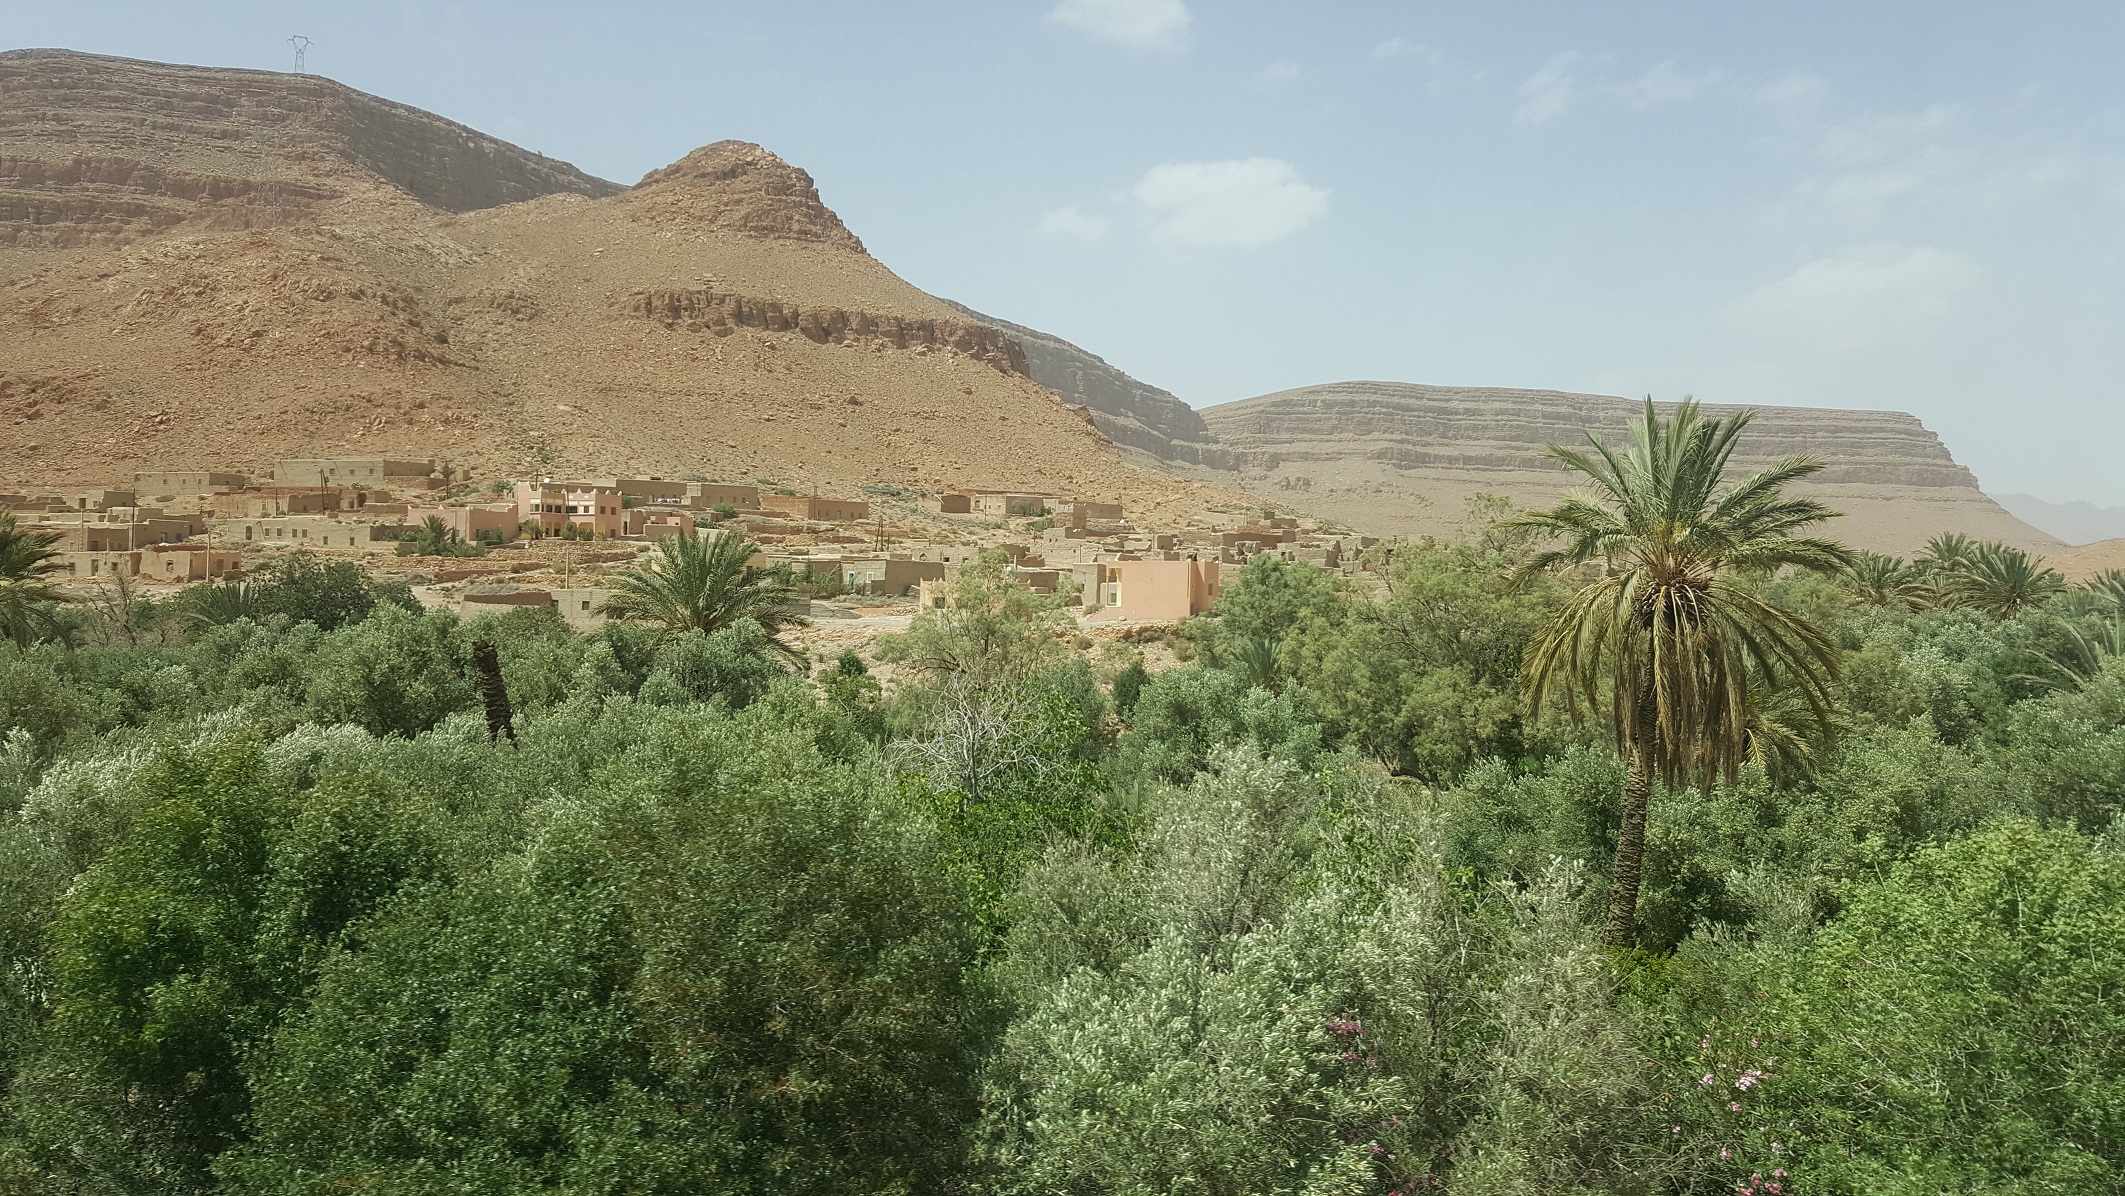 Day 06: Erfoud - Tinghir - Ouarzazate